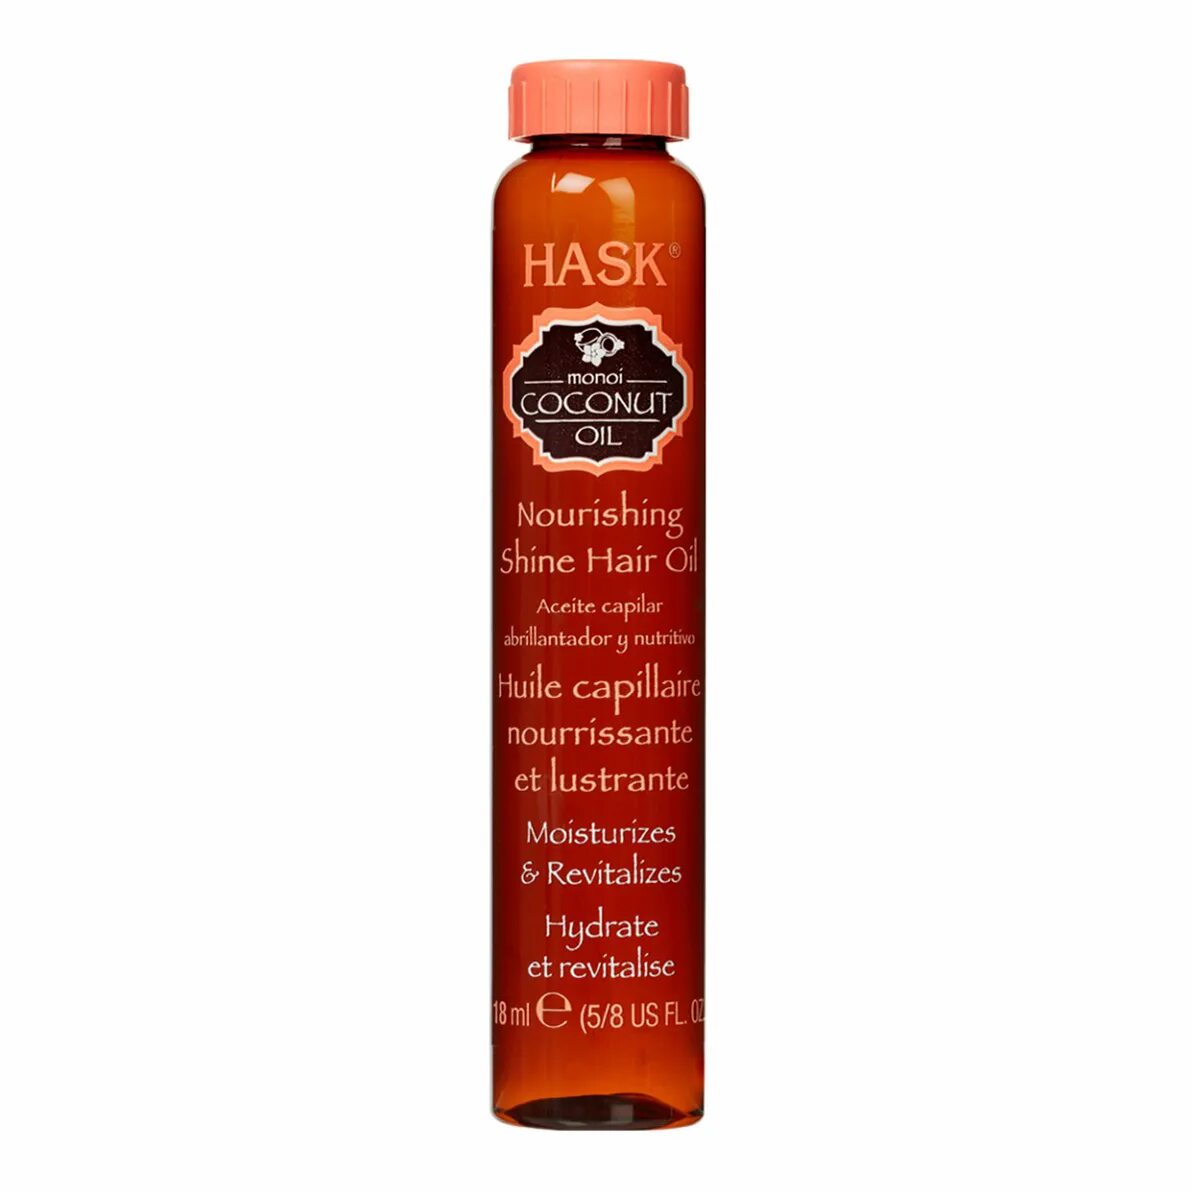 Hask Coconut Oil масло. Hask Argan Oil шампунь. Масло для волос Hask Coconut. Питательное масло с экстрактом кокоса Hask. Масло 18 купить